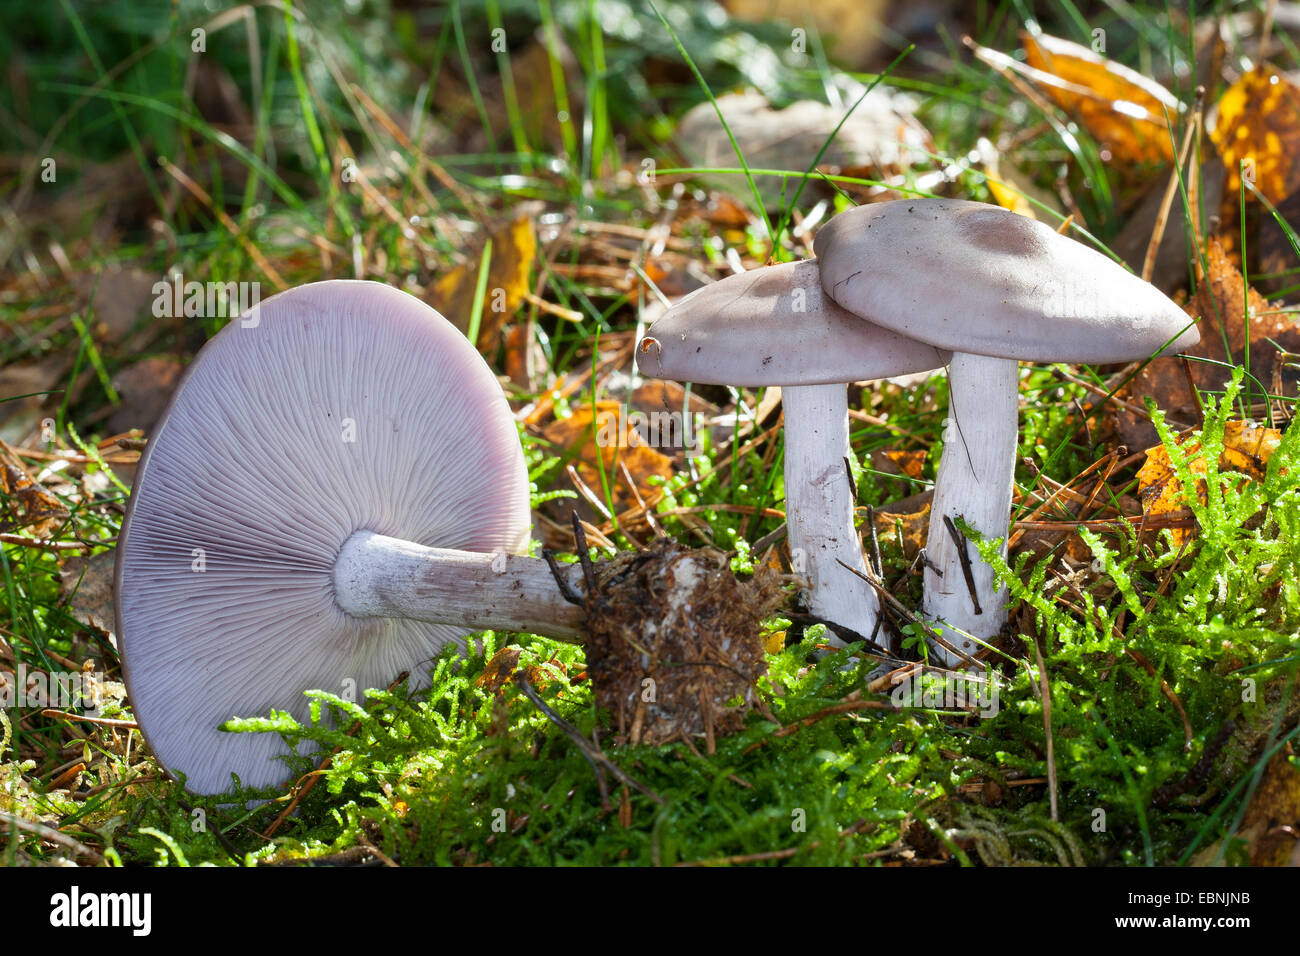 Wood blewit, Blue stalk mushroom, Wood Blewit mushroom (Lepista nuda, Clitocybe nuda, Tricholoma nudum), three fruiting bodies on forest floor, Germany Stock Photo